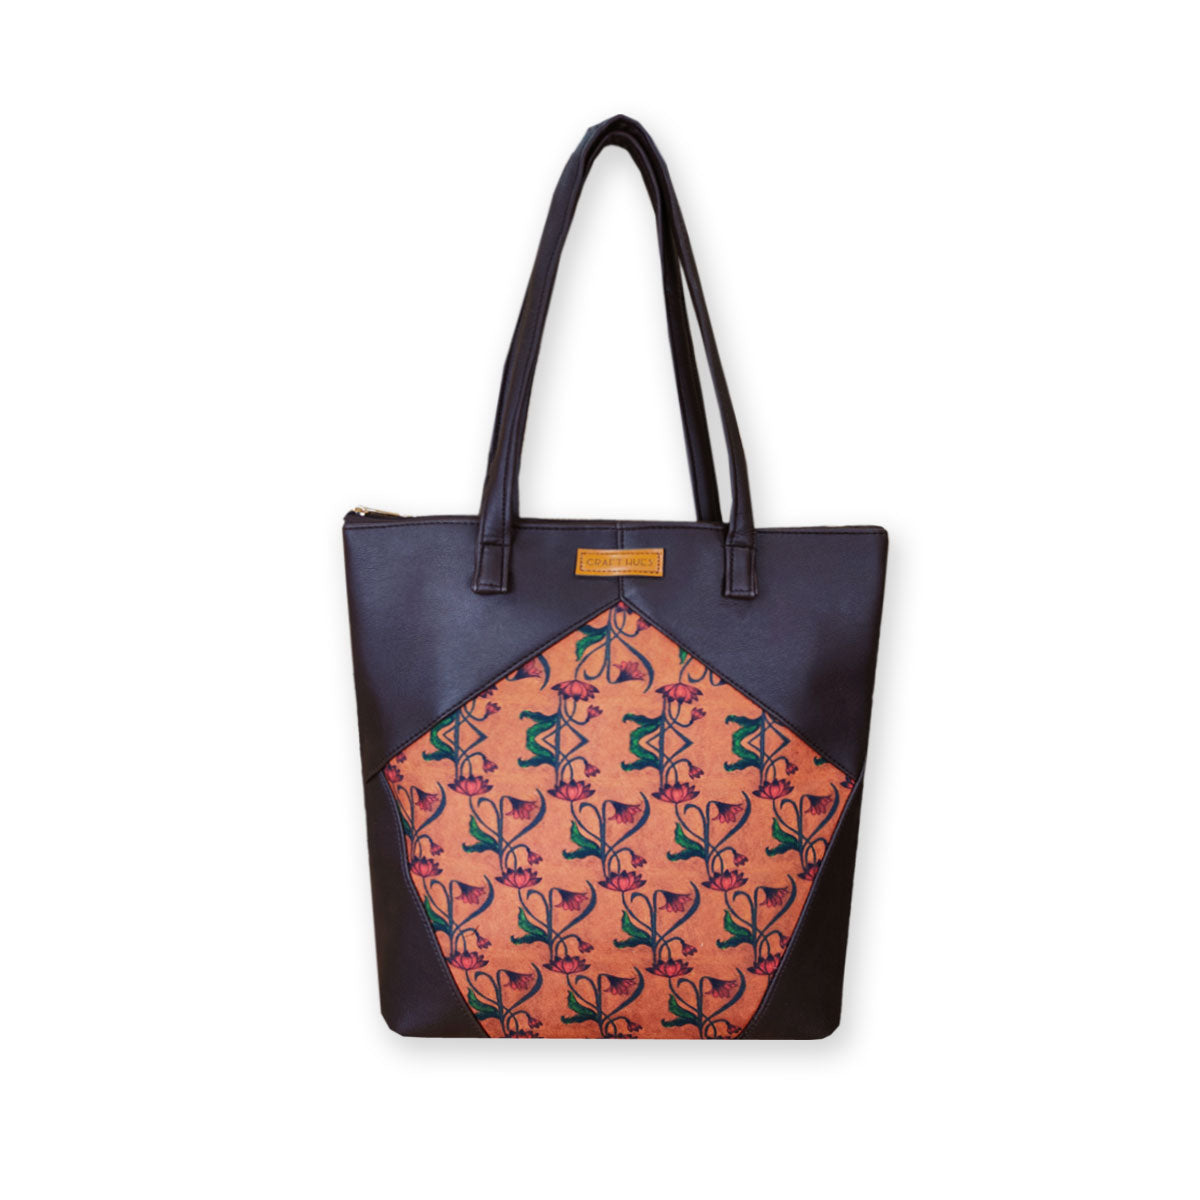 Art Nouveau Brown Floral Tote Bag